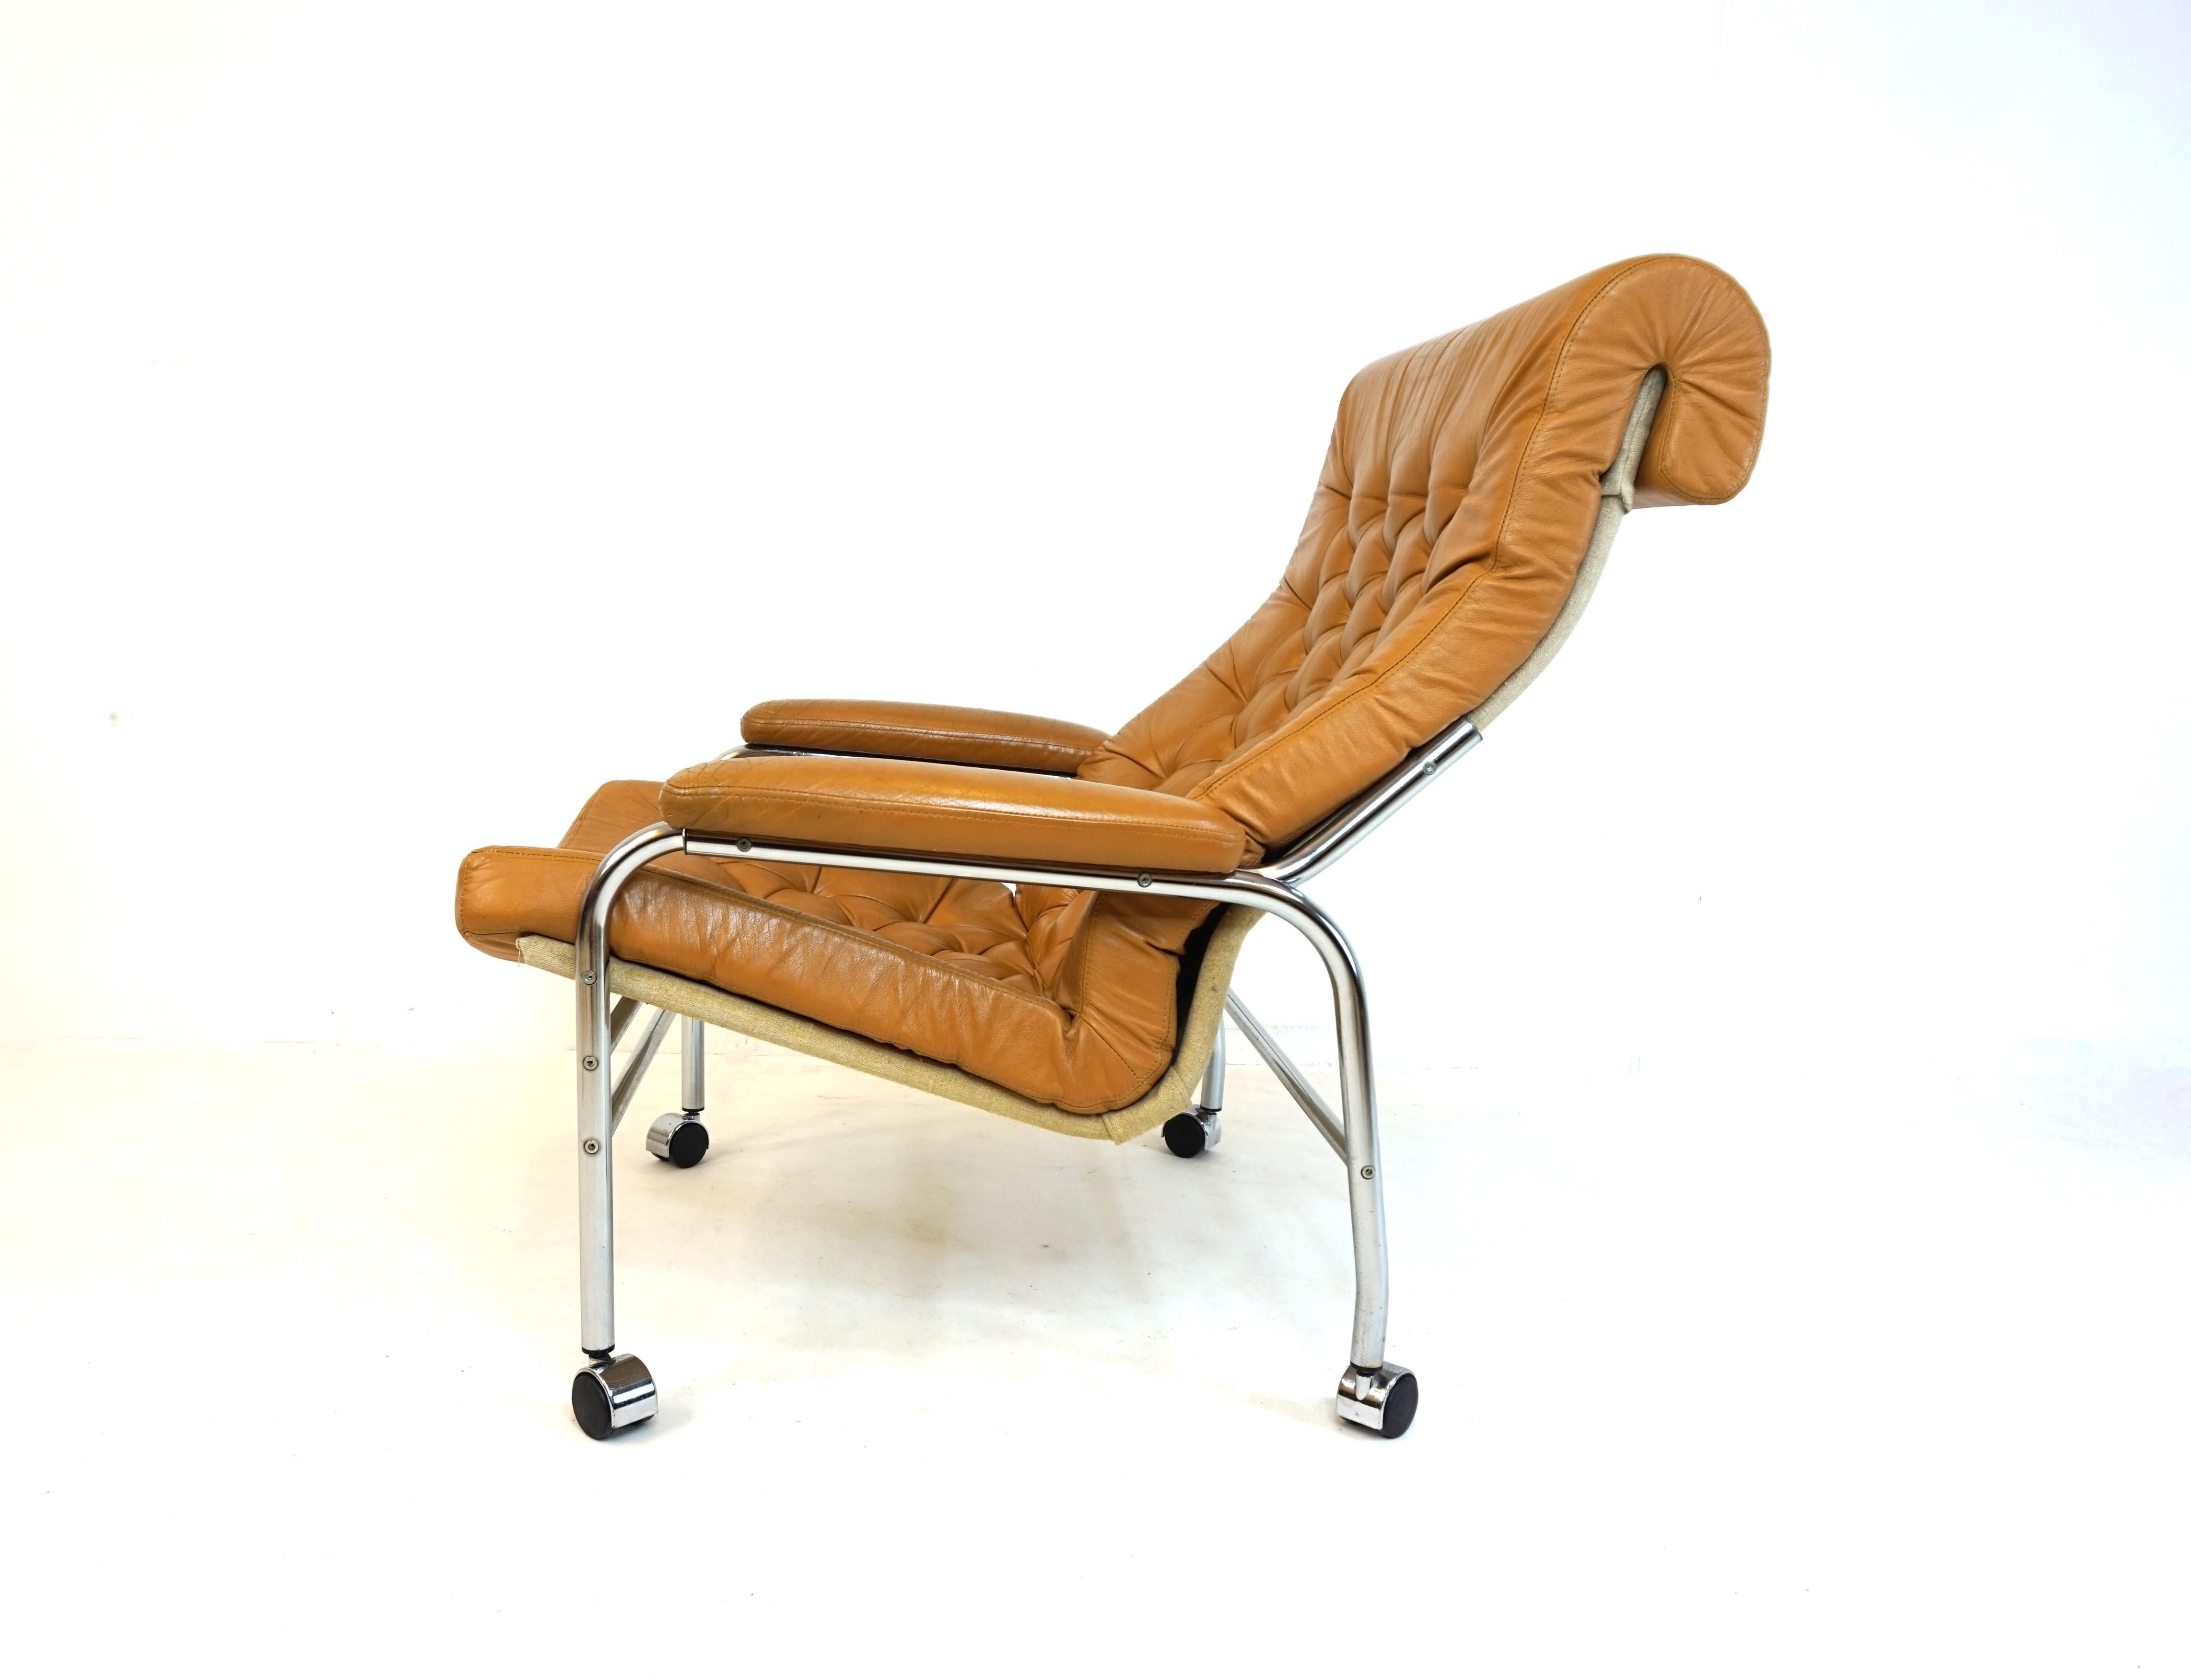 Der Sessel Bore in karamellfarbenem Leder ist in gutem Zustand. Das Leder des Sitzkissens ist weich, die Kamelknopfstruktur ist intakt und ohne Beschädigung. Der Lederbezug der Armlehnen weist an den vorderen Ecken Patina auf, was dem Sessel einen